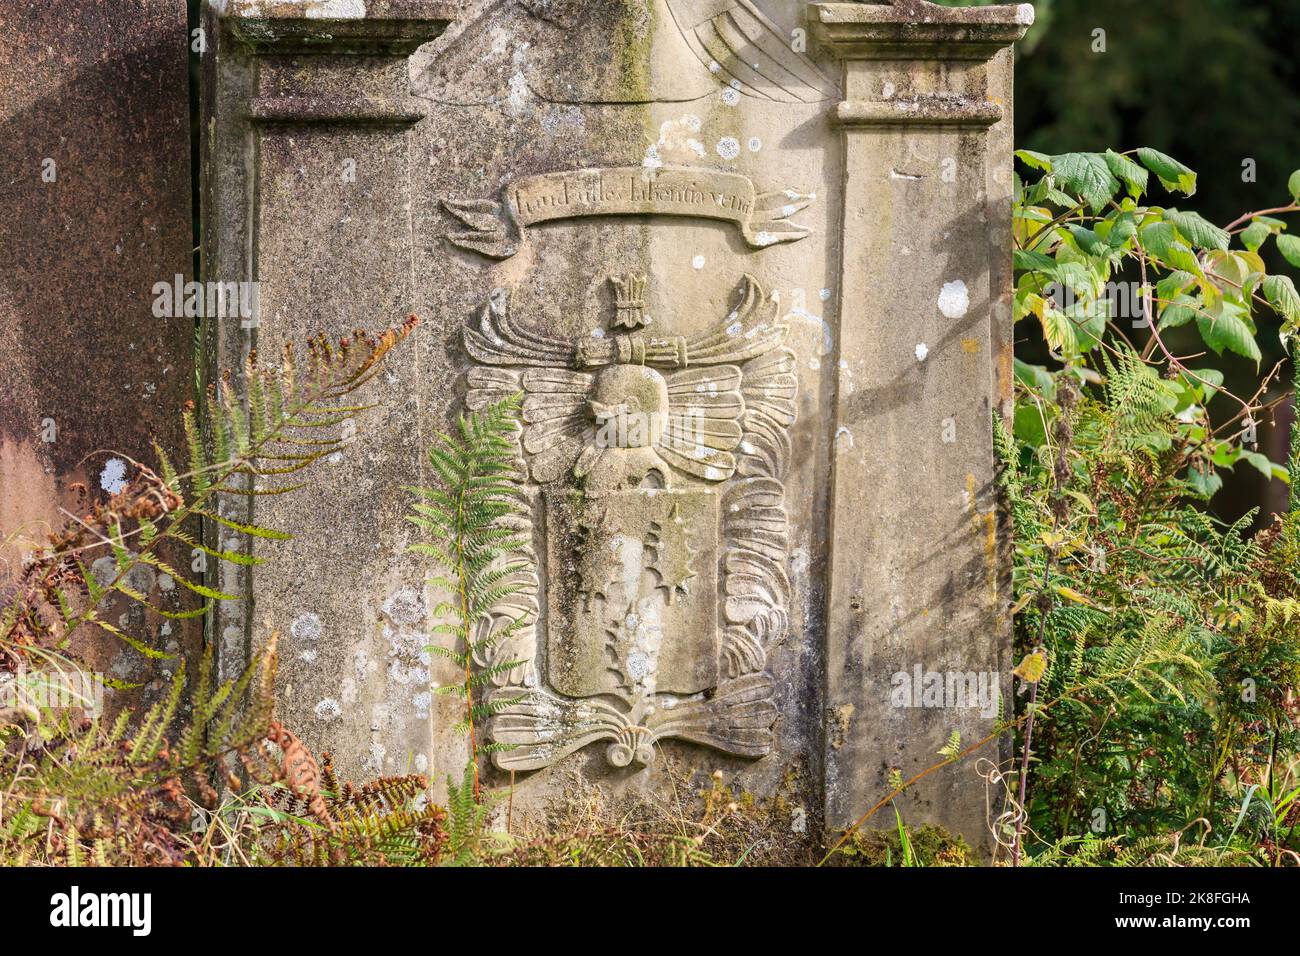 Une pierre gravée médiévale dans un vieux cimetière écossais Banque D'Images